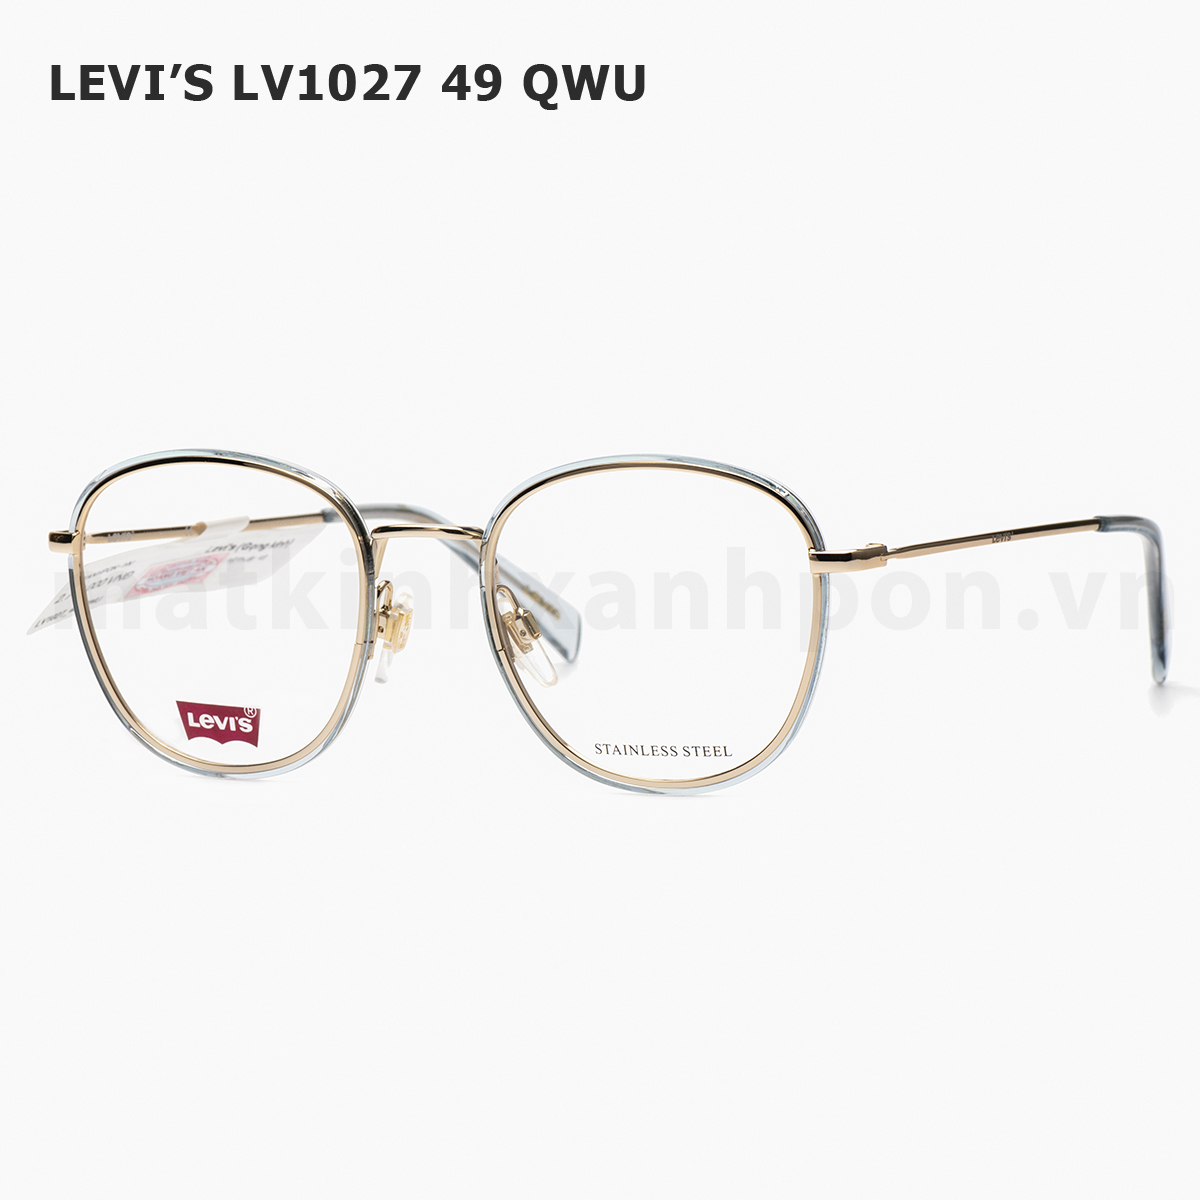 Levi’s LV1027 49 QWU